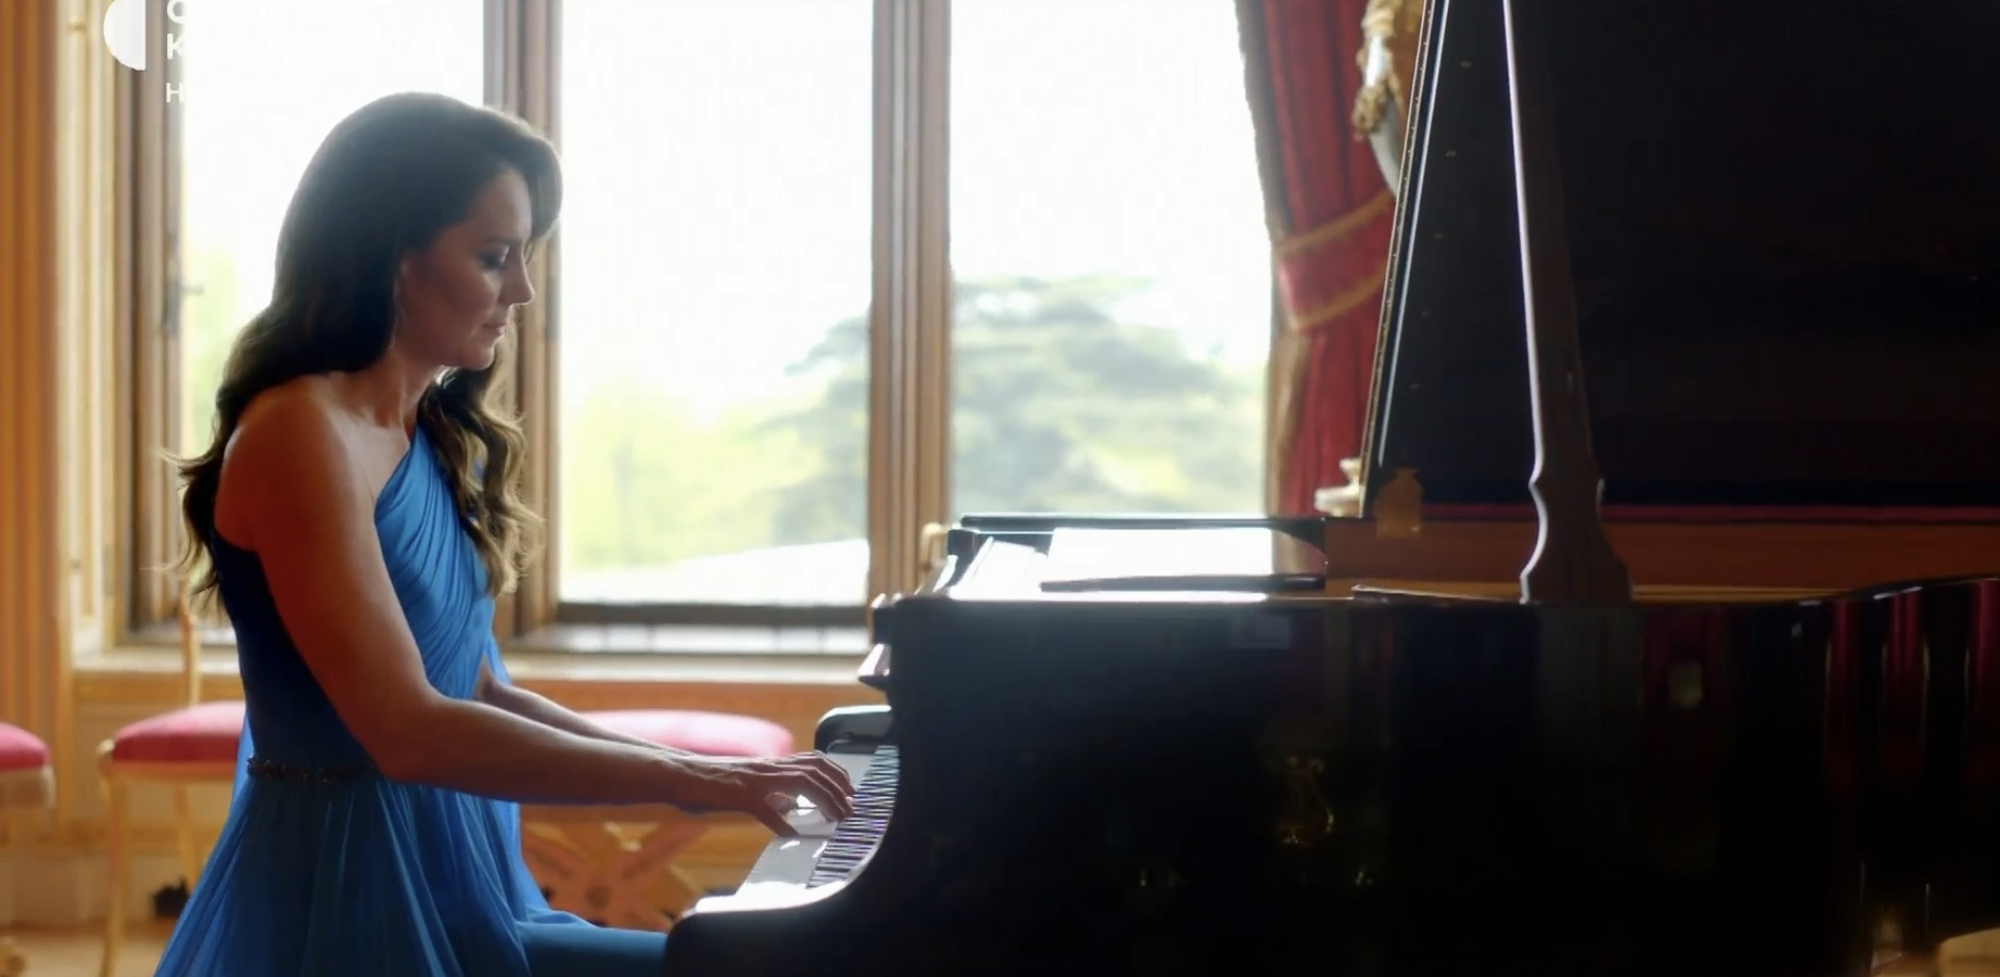 Кейт Міддлтон зіграла "Стефанію" на фортепіано: Kalush Orchestra потужно відкрили гранд-фінал Євробачення-2023. Фото та відео